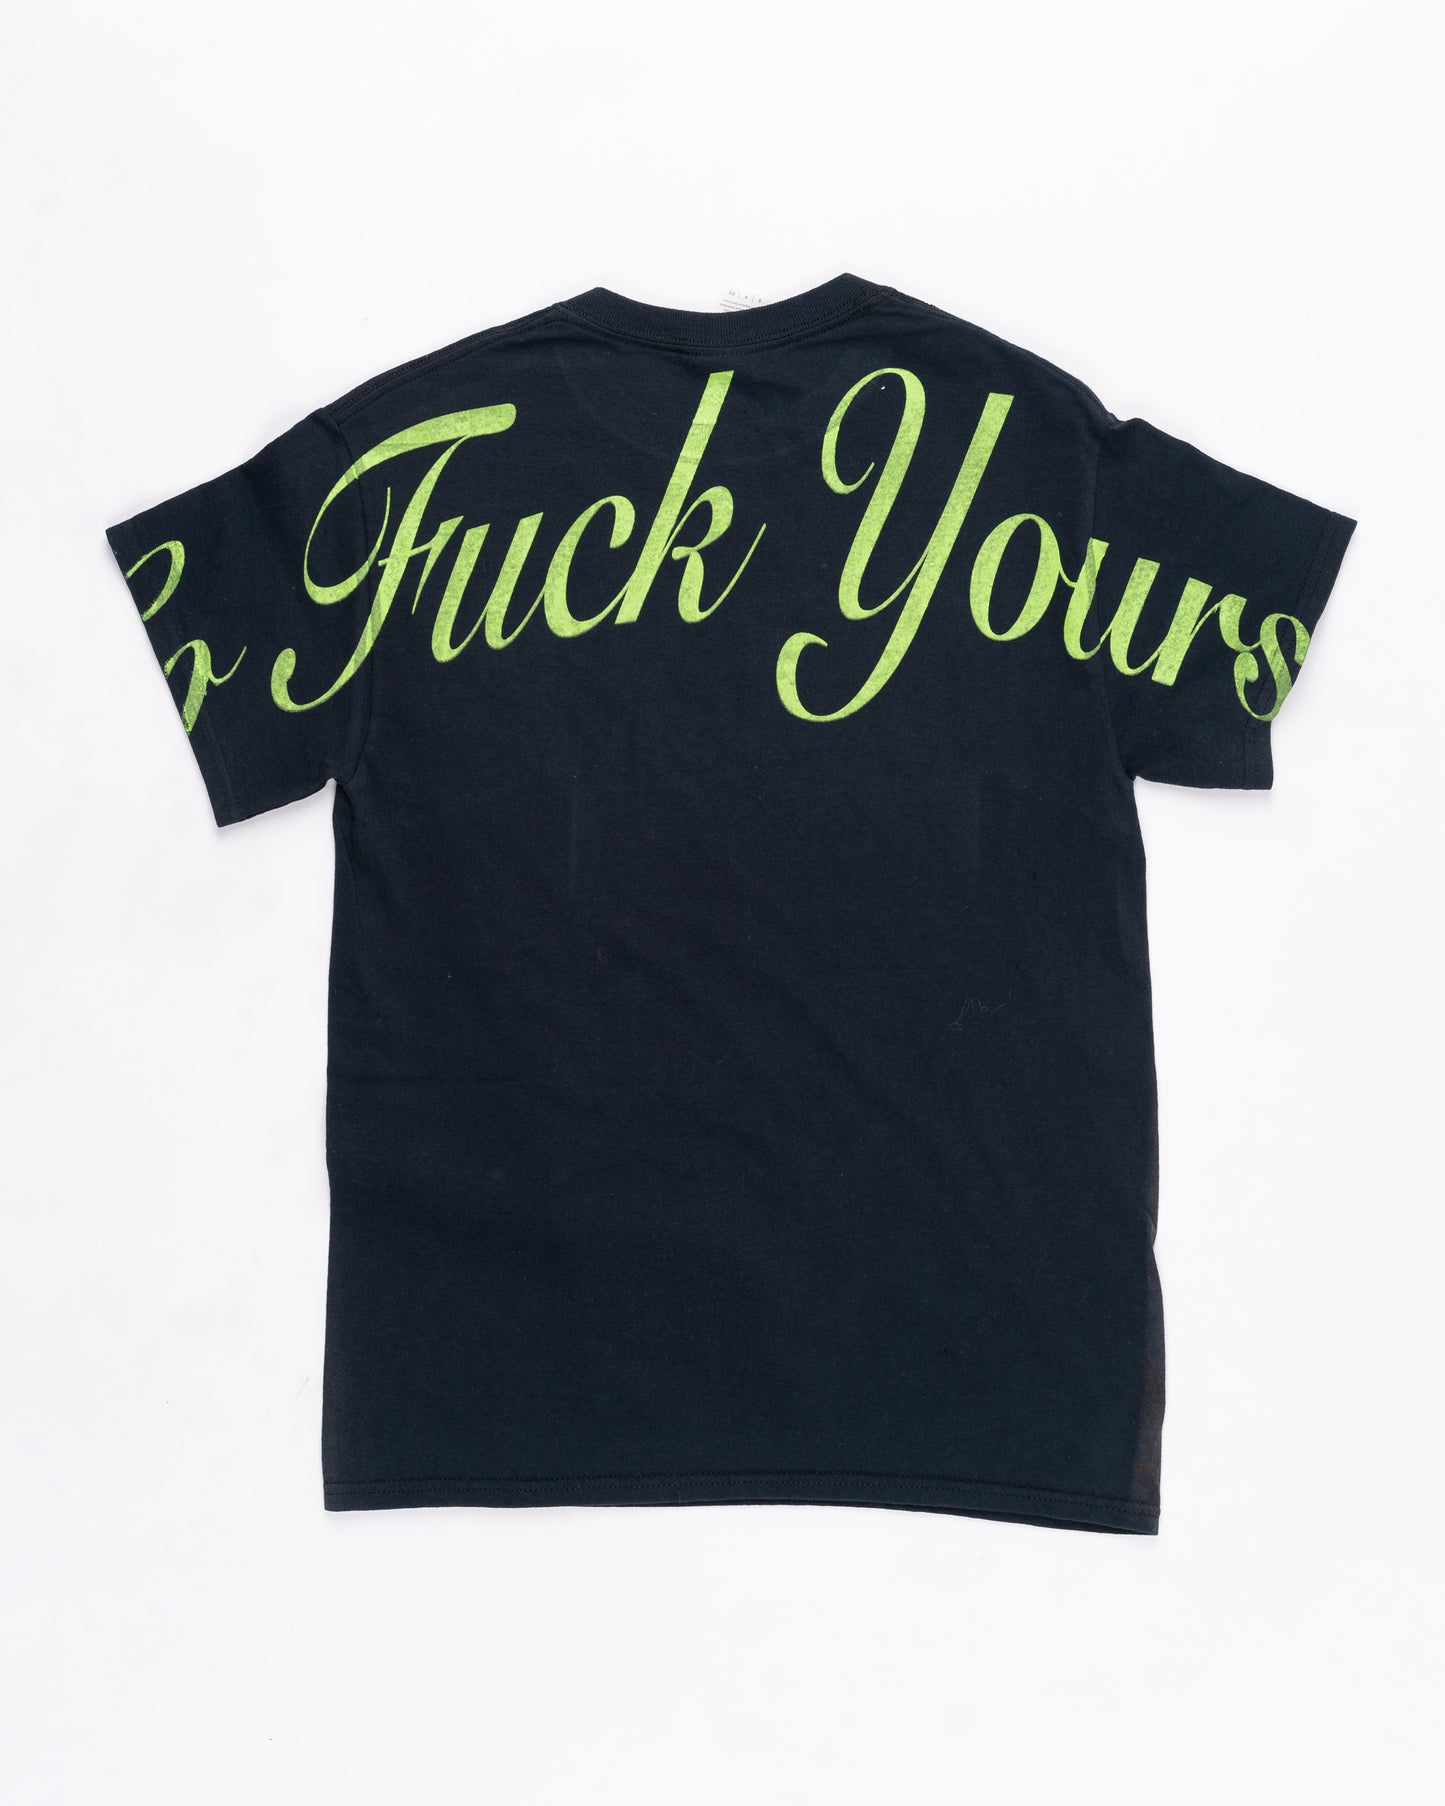 Fuck You Fuckin' Fuck T-Shirt Size: Small